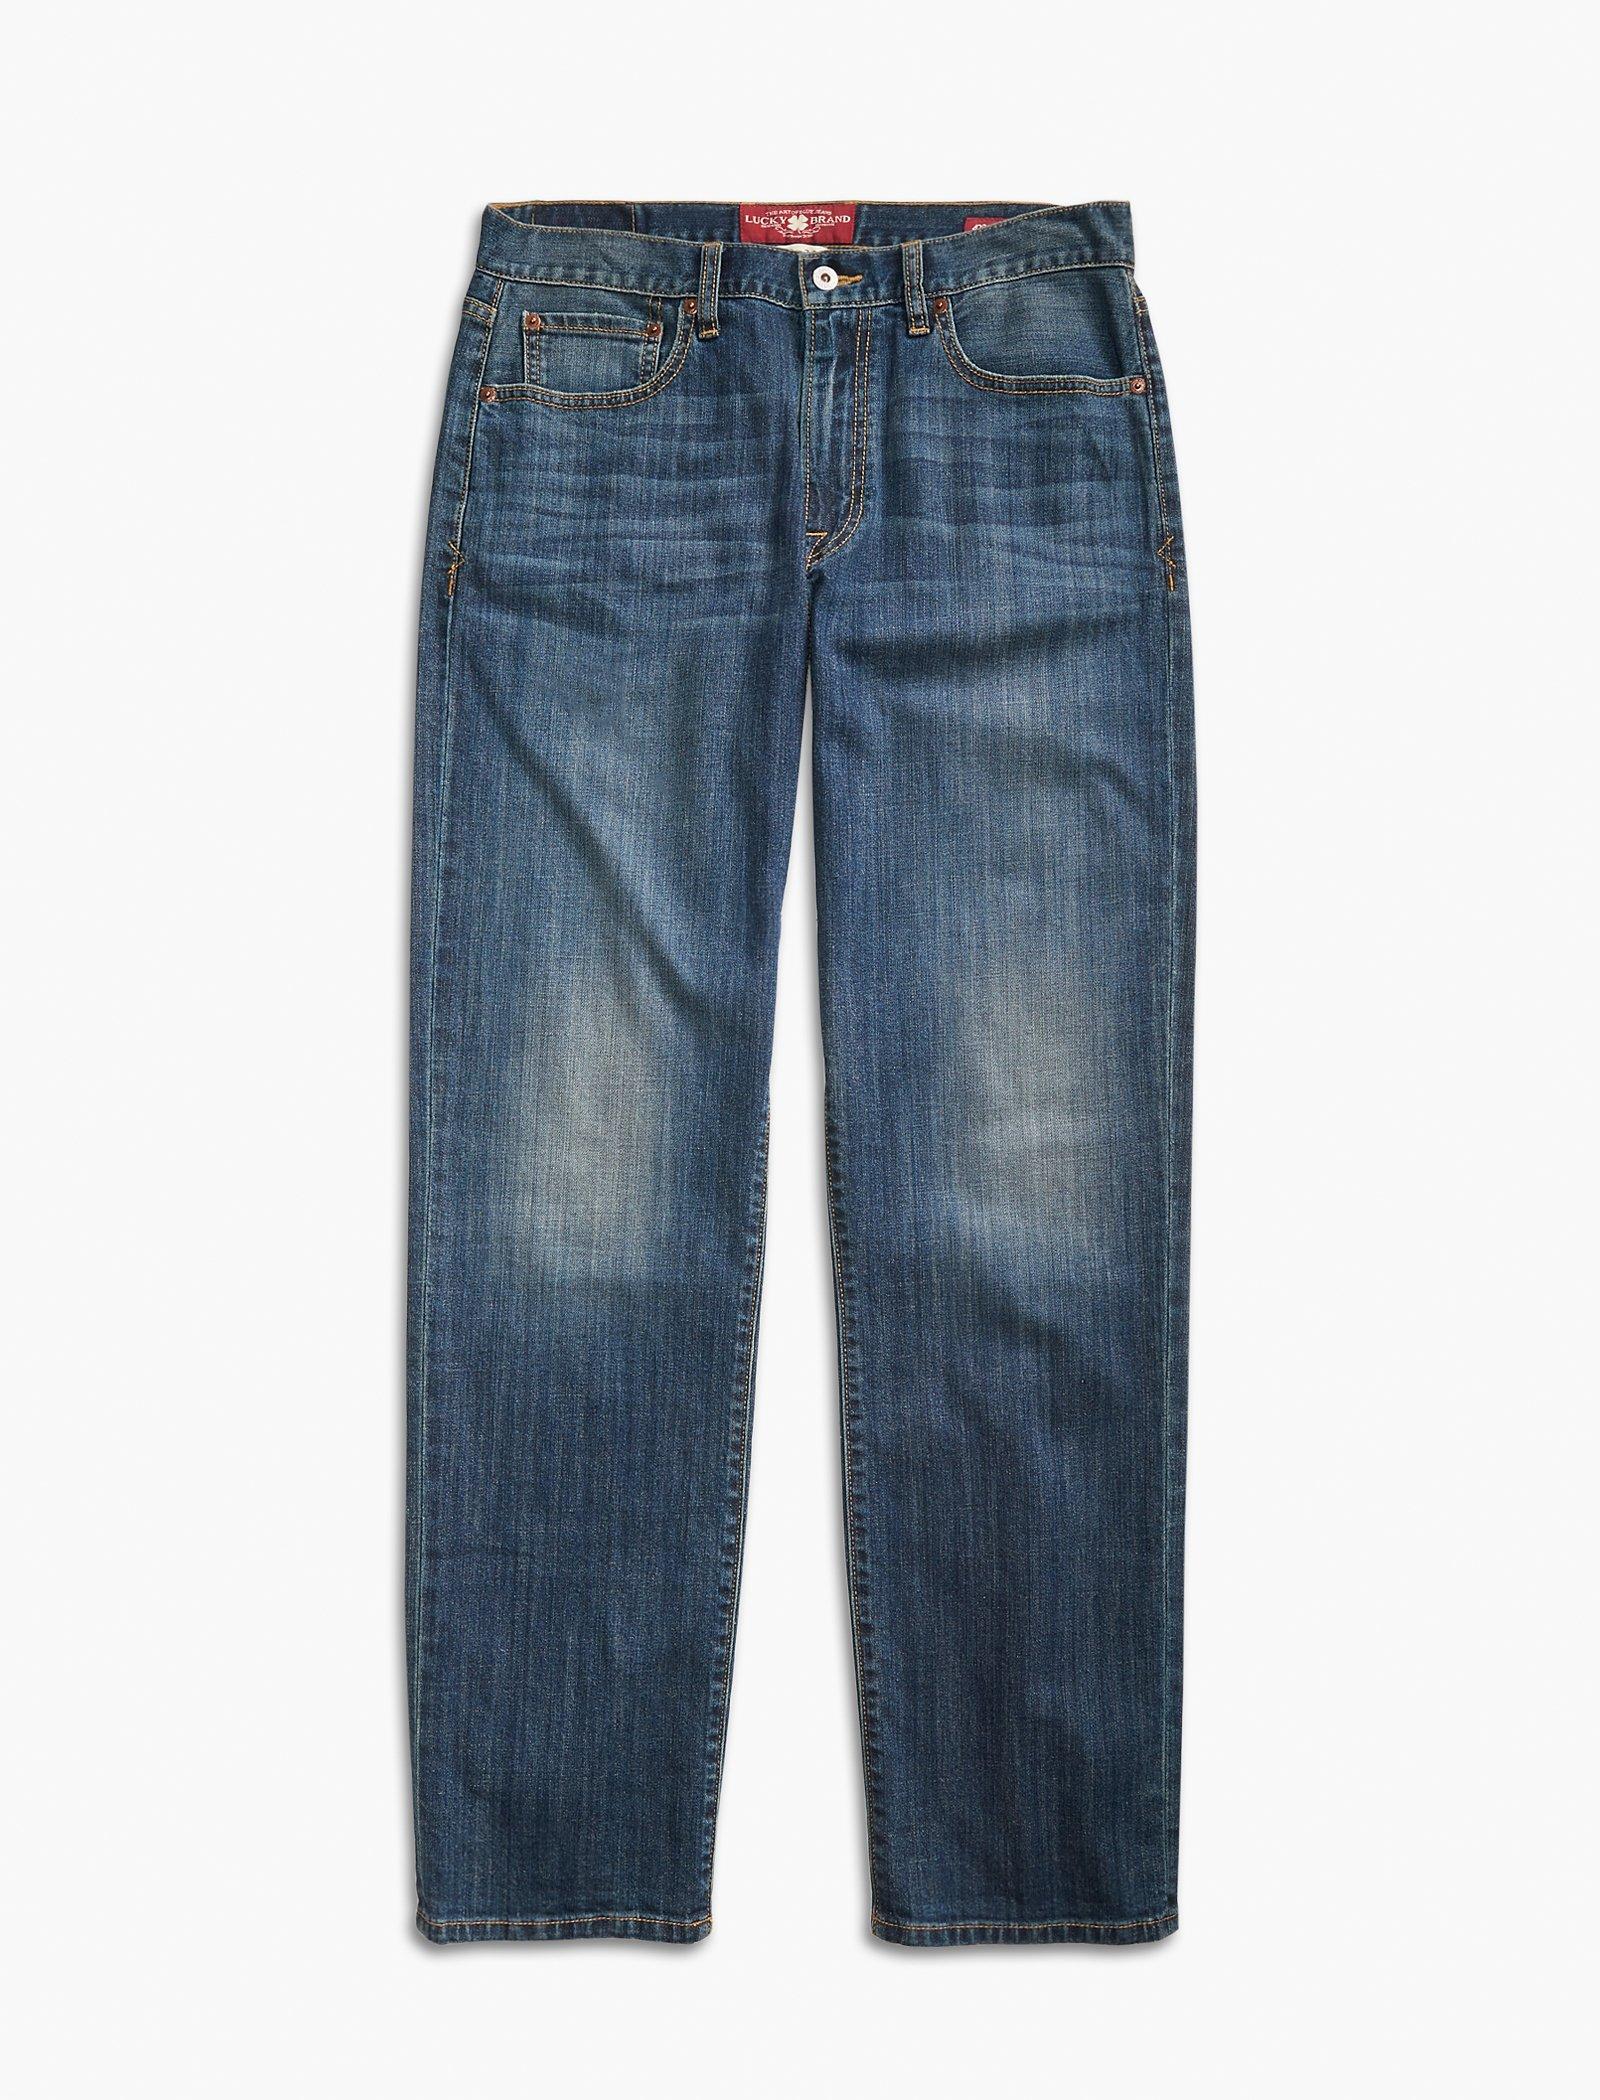 cotton jeans pant